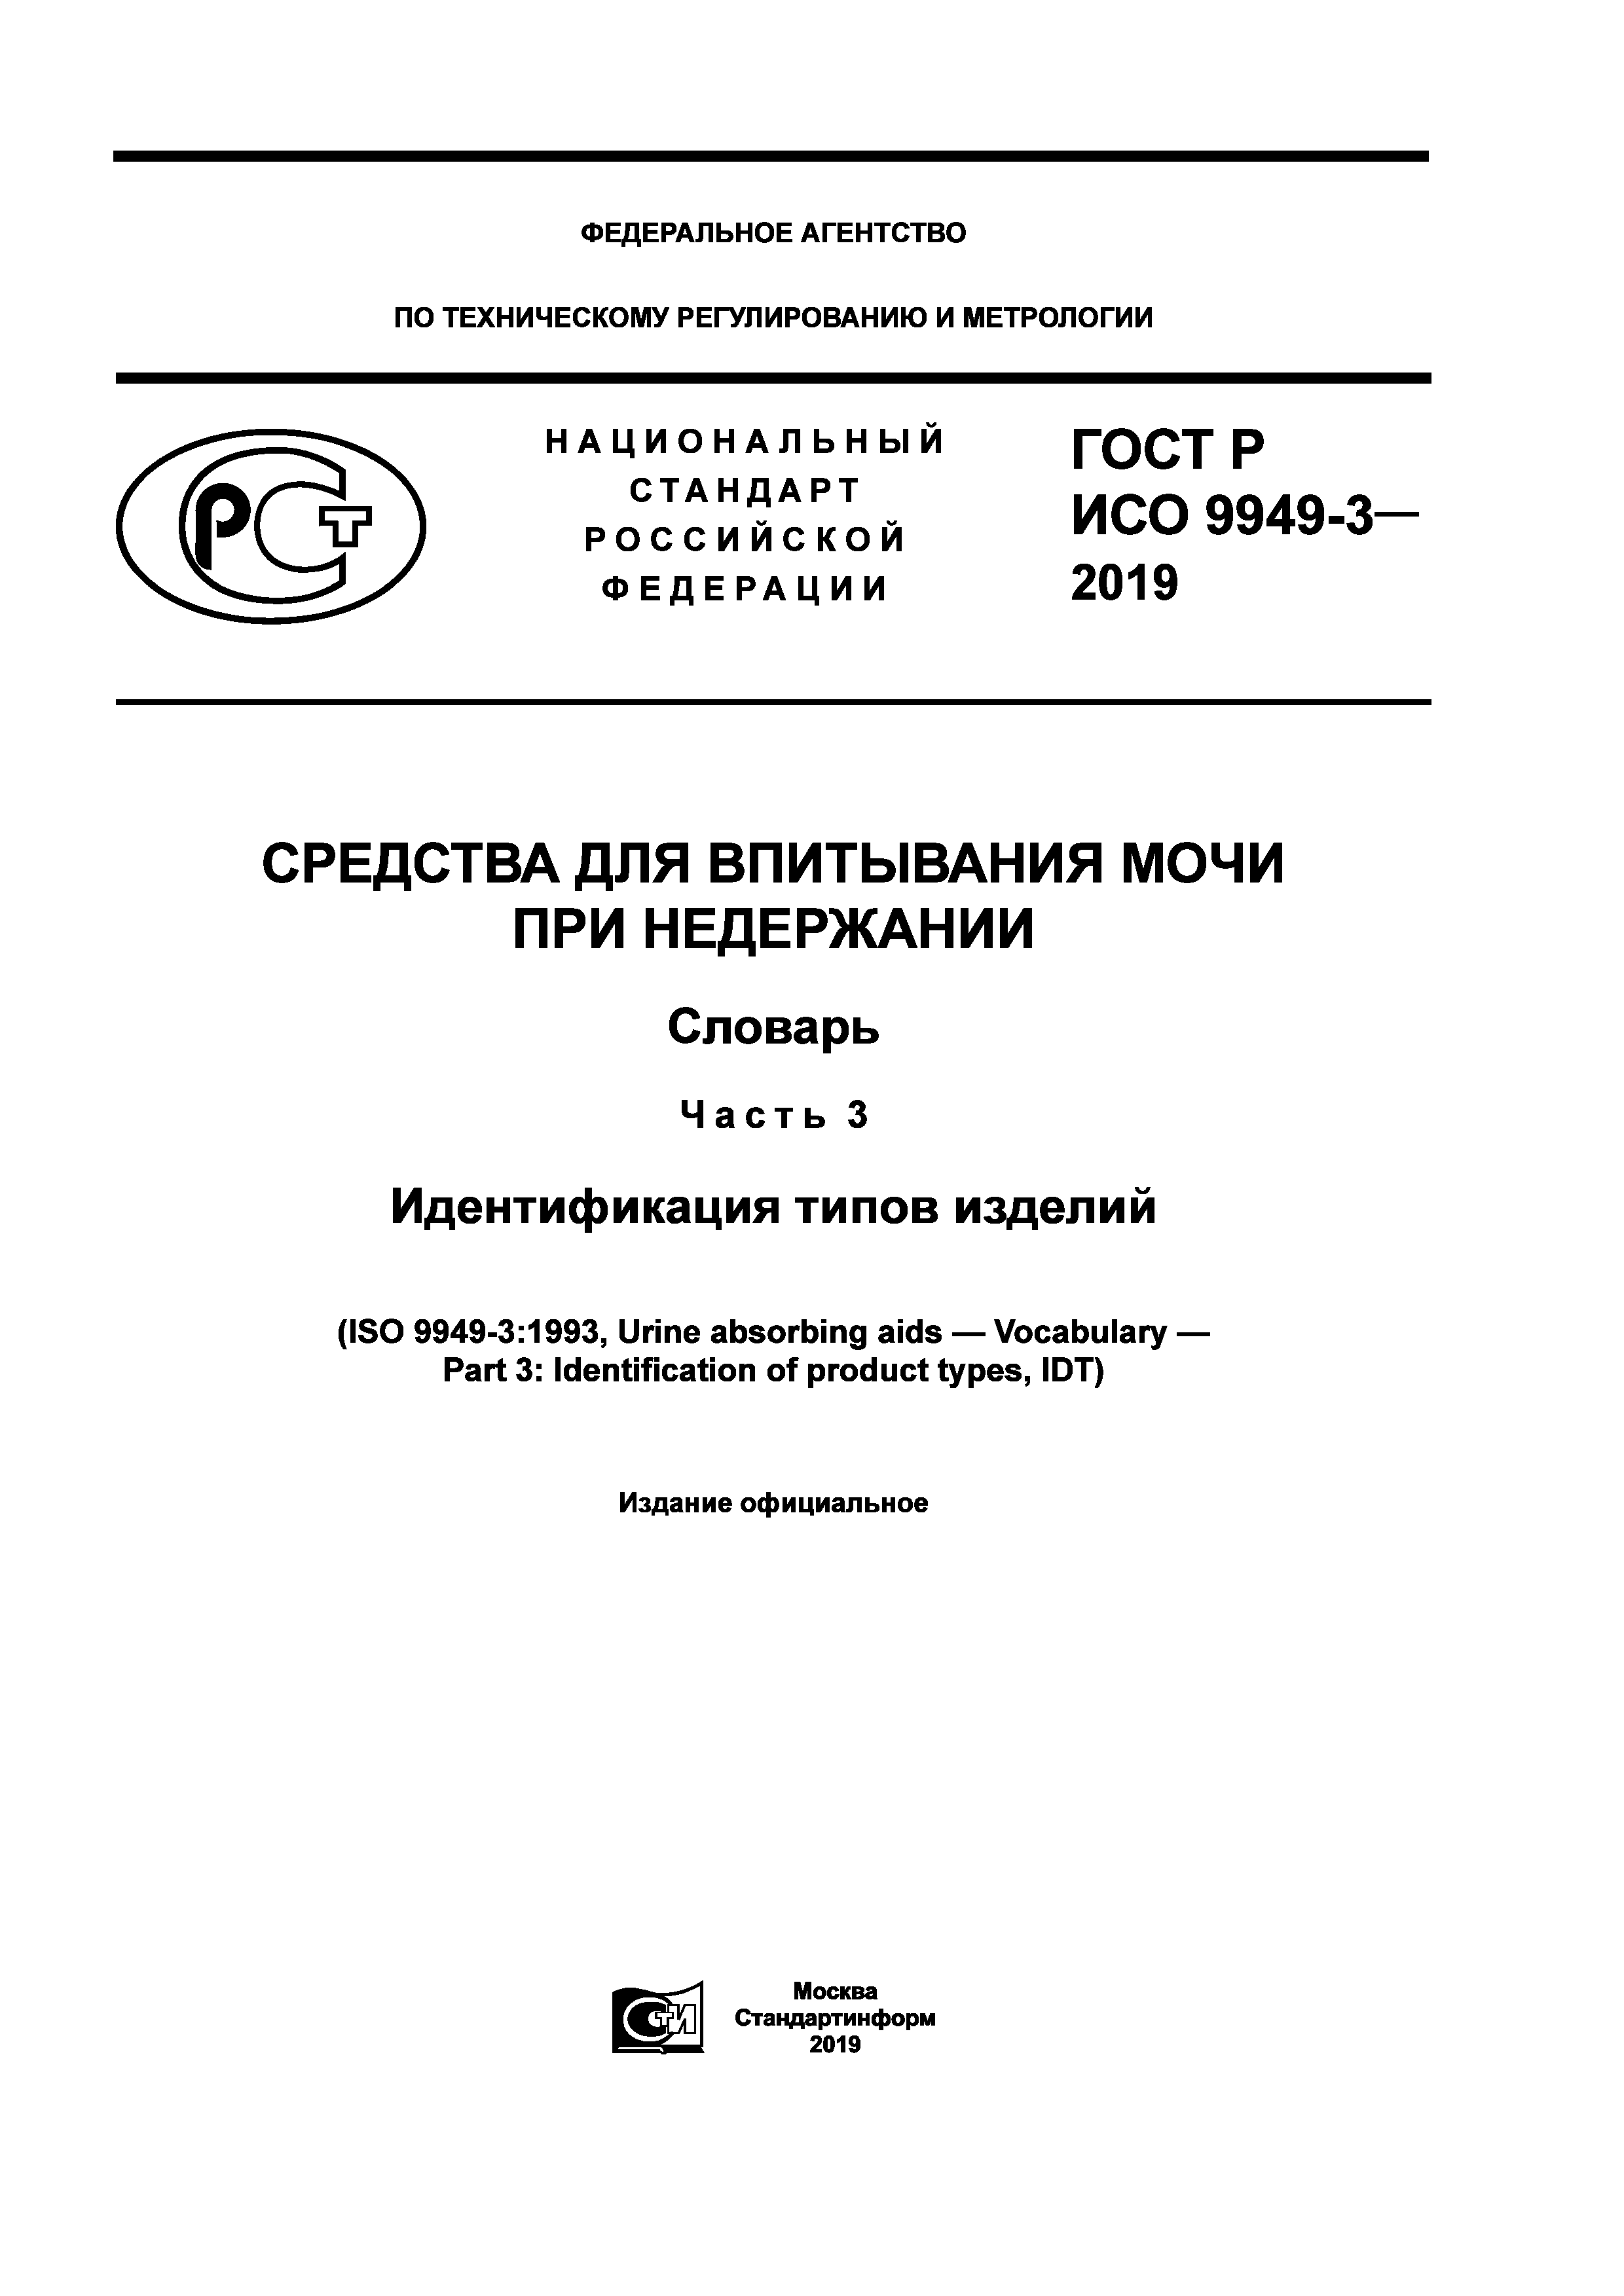 ГОСТ Р ИСО 9949-3-2019